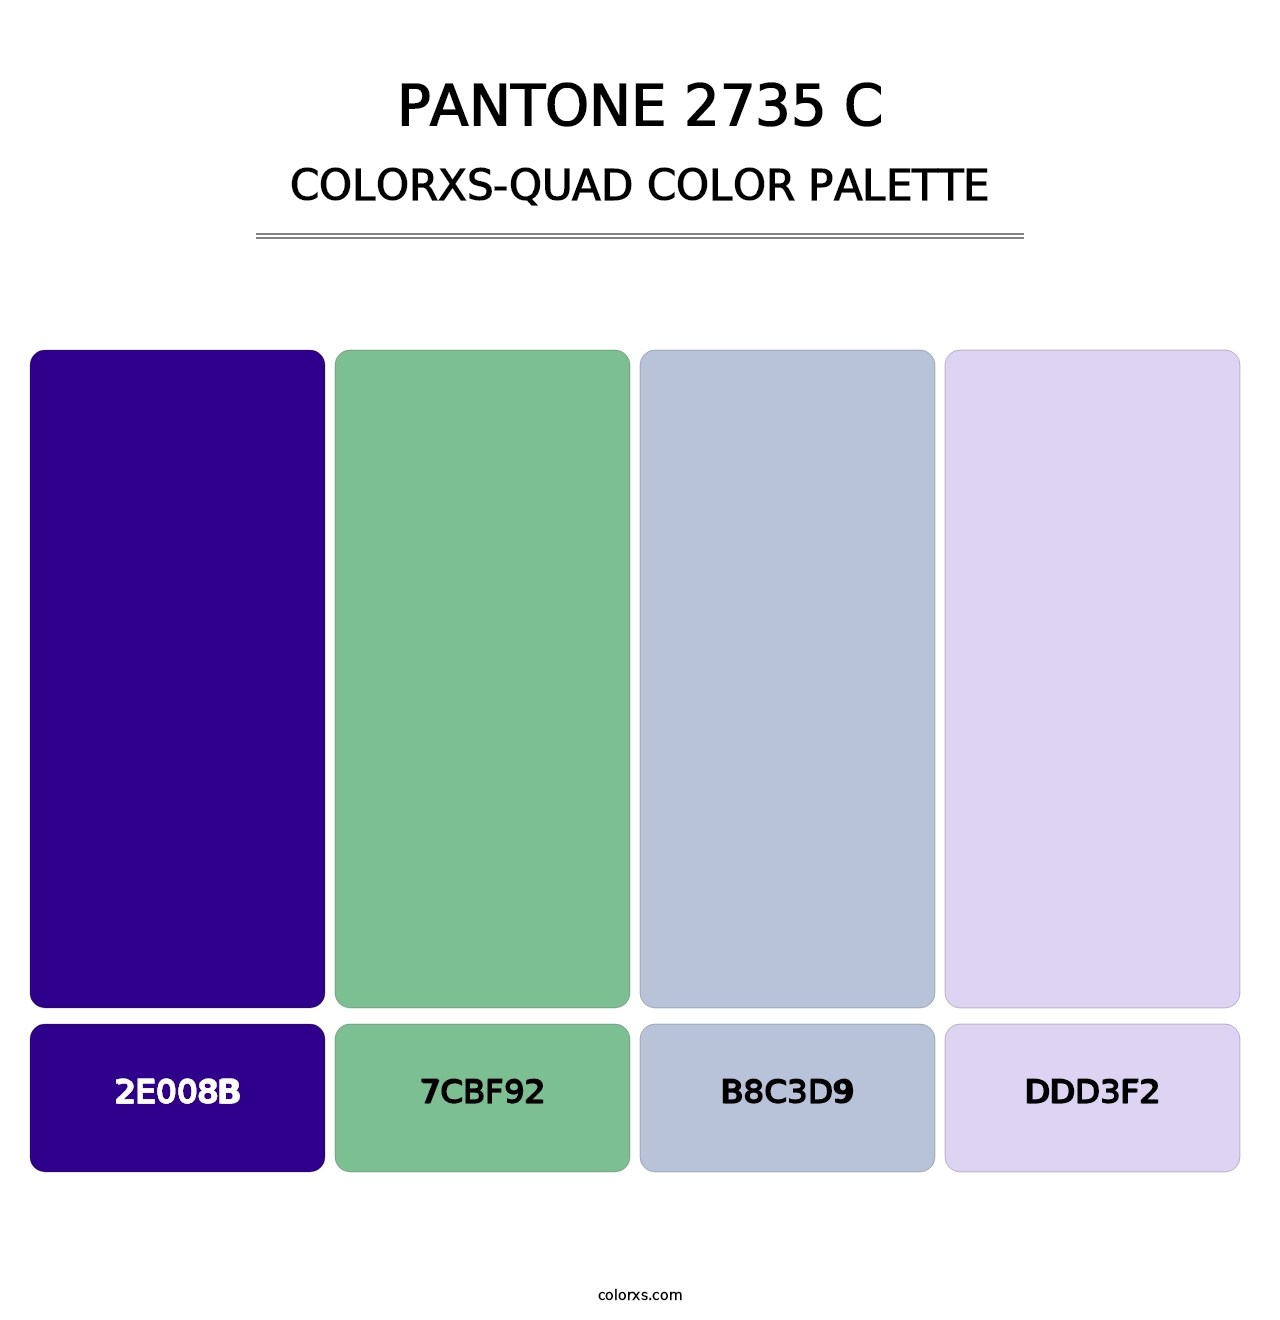 PANTONE 2735 C - Colorxs Quad Palette